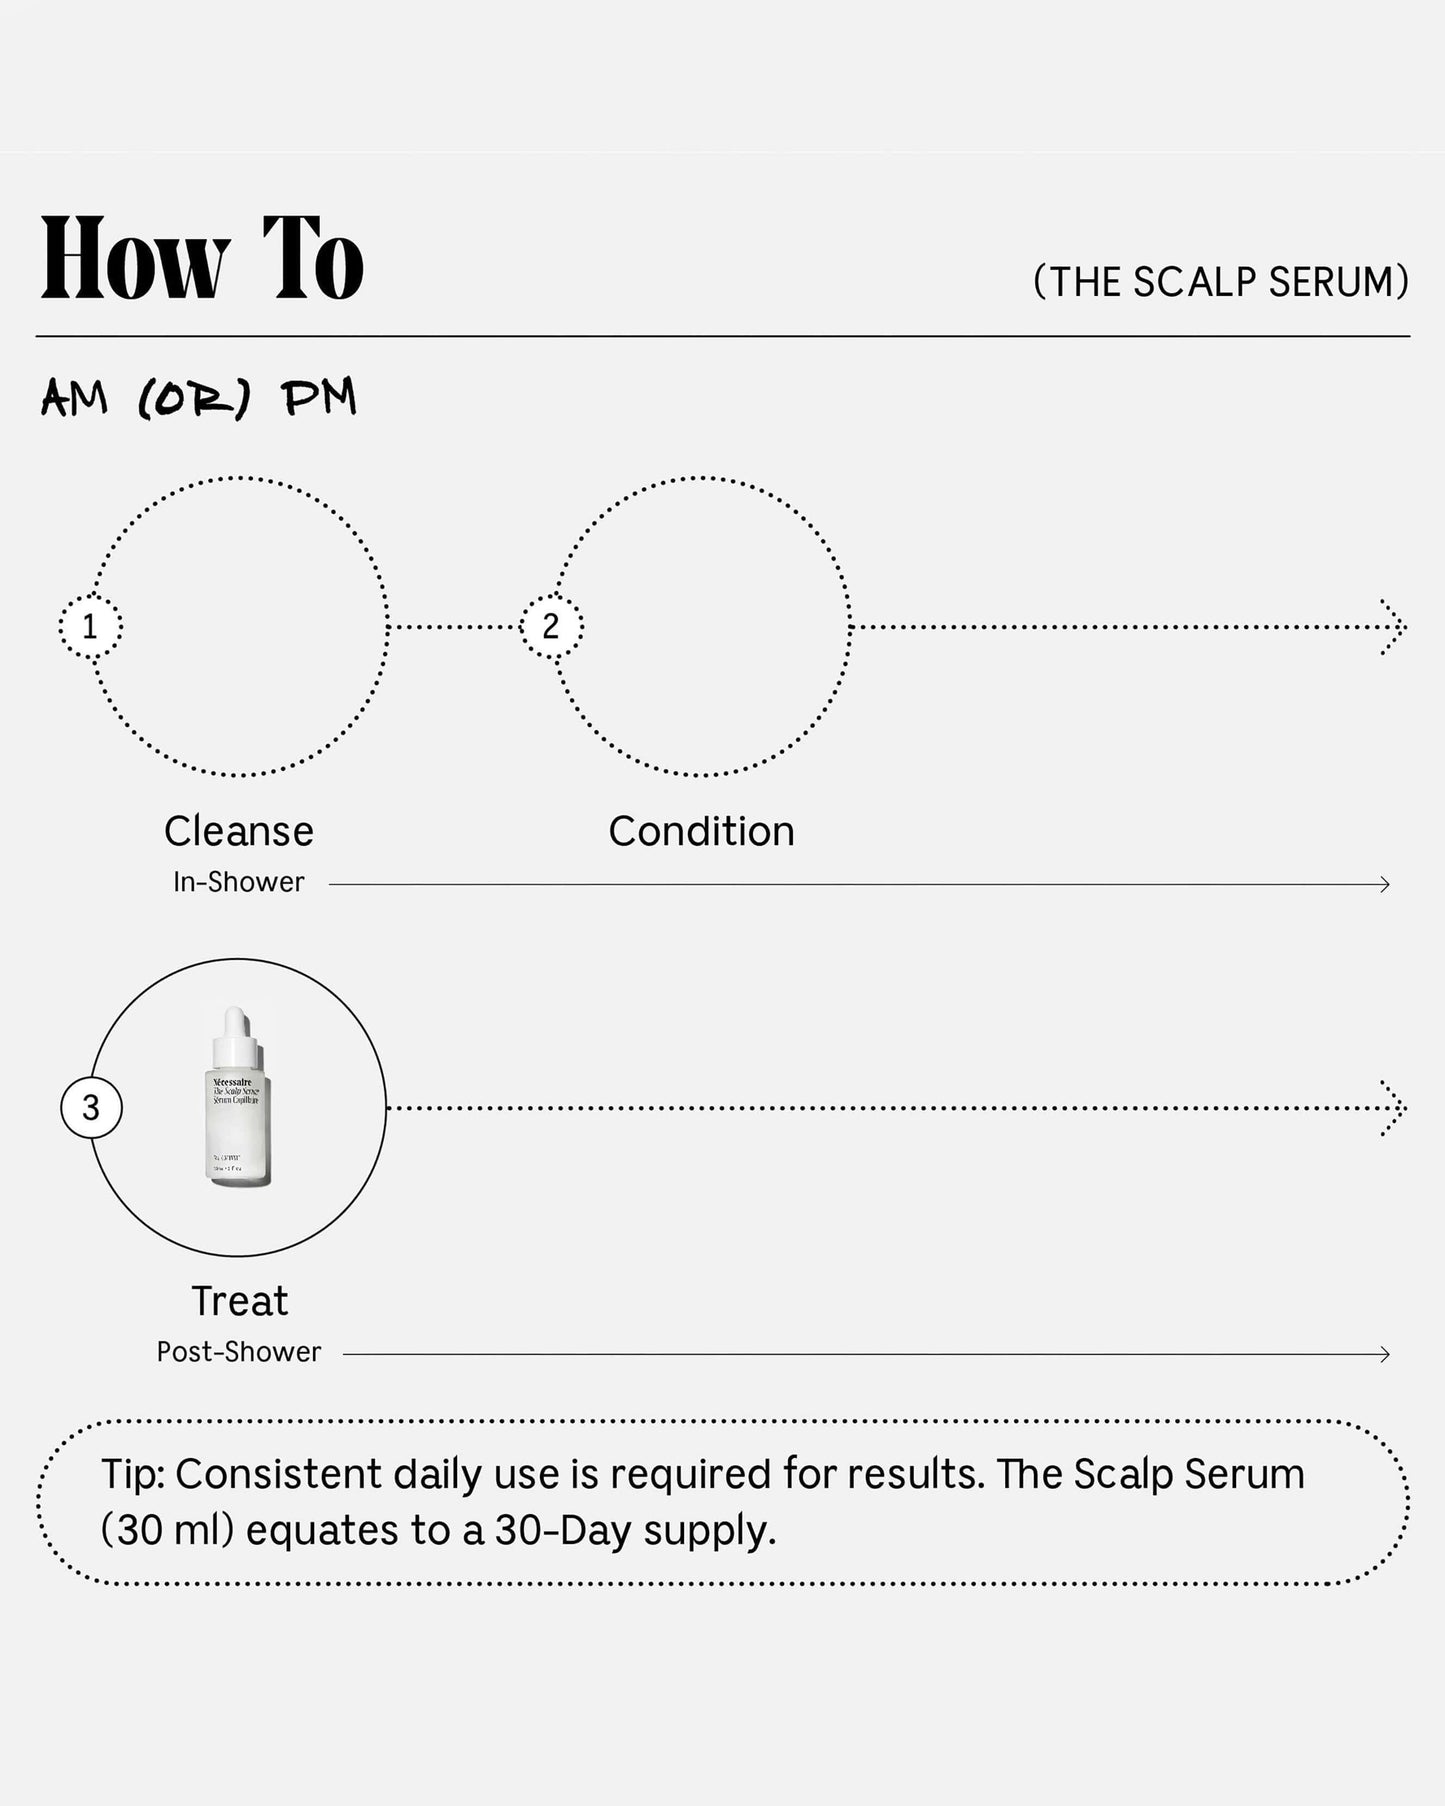 The Scalp Serum